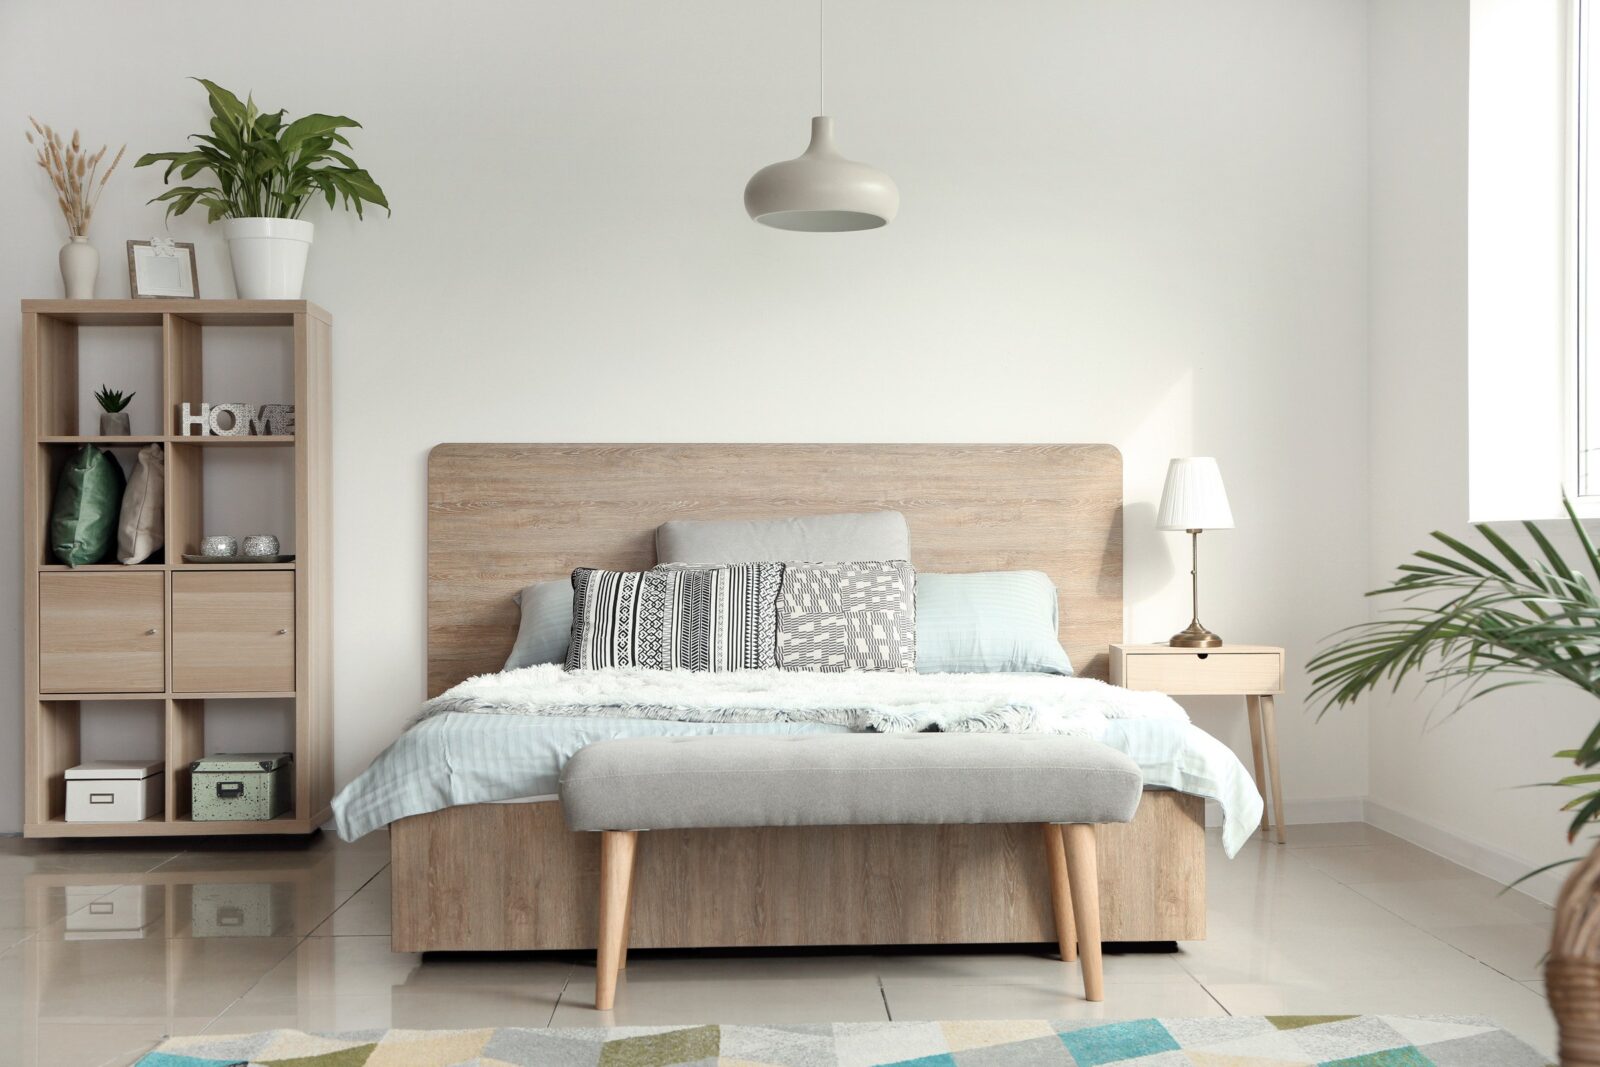 szafka, roślina, drewniane łóżko, tapicerowana ławka